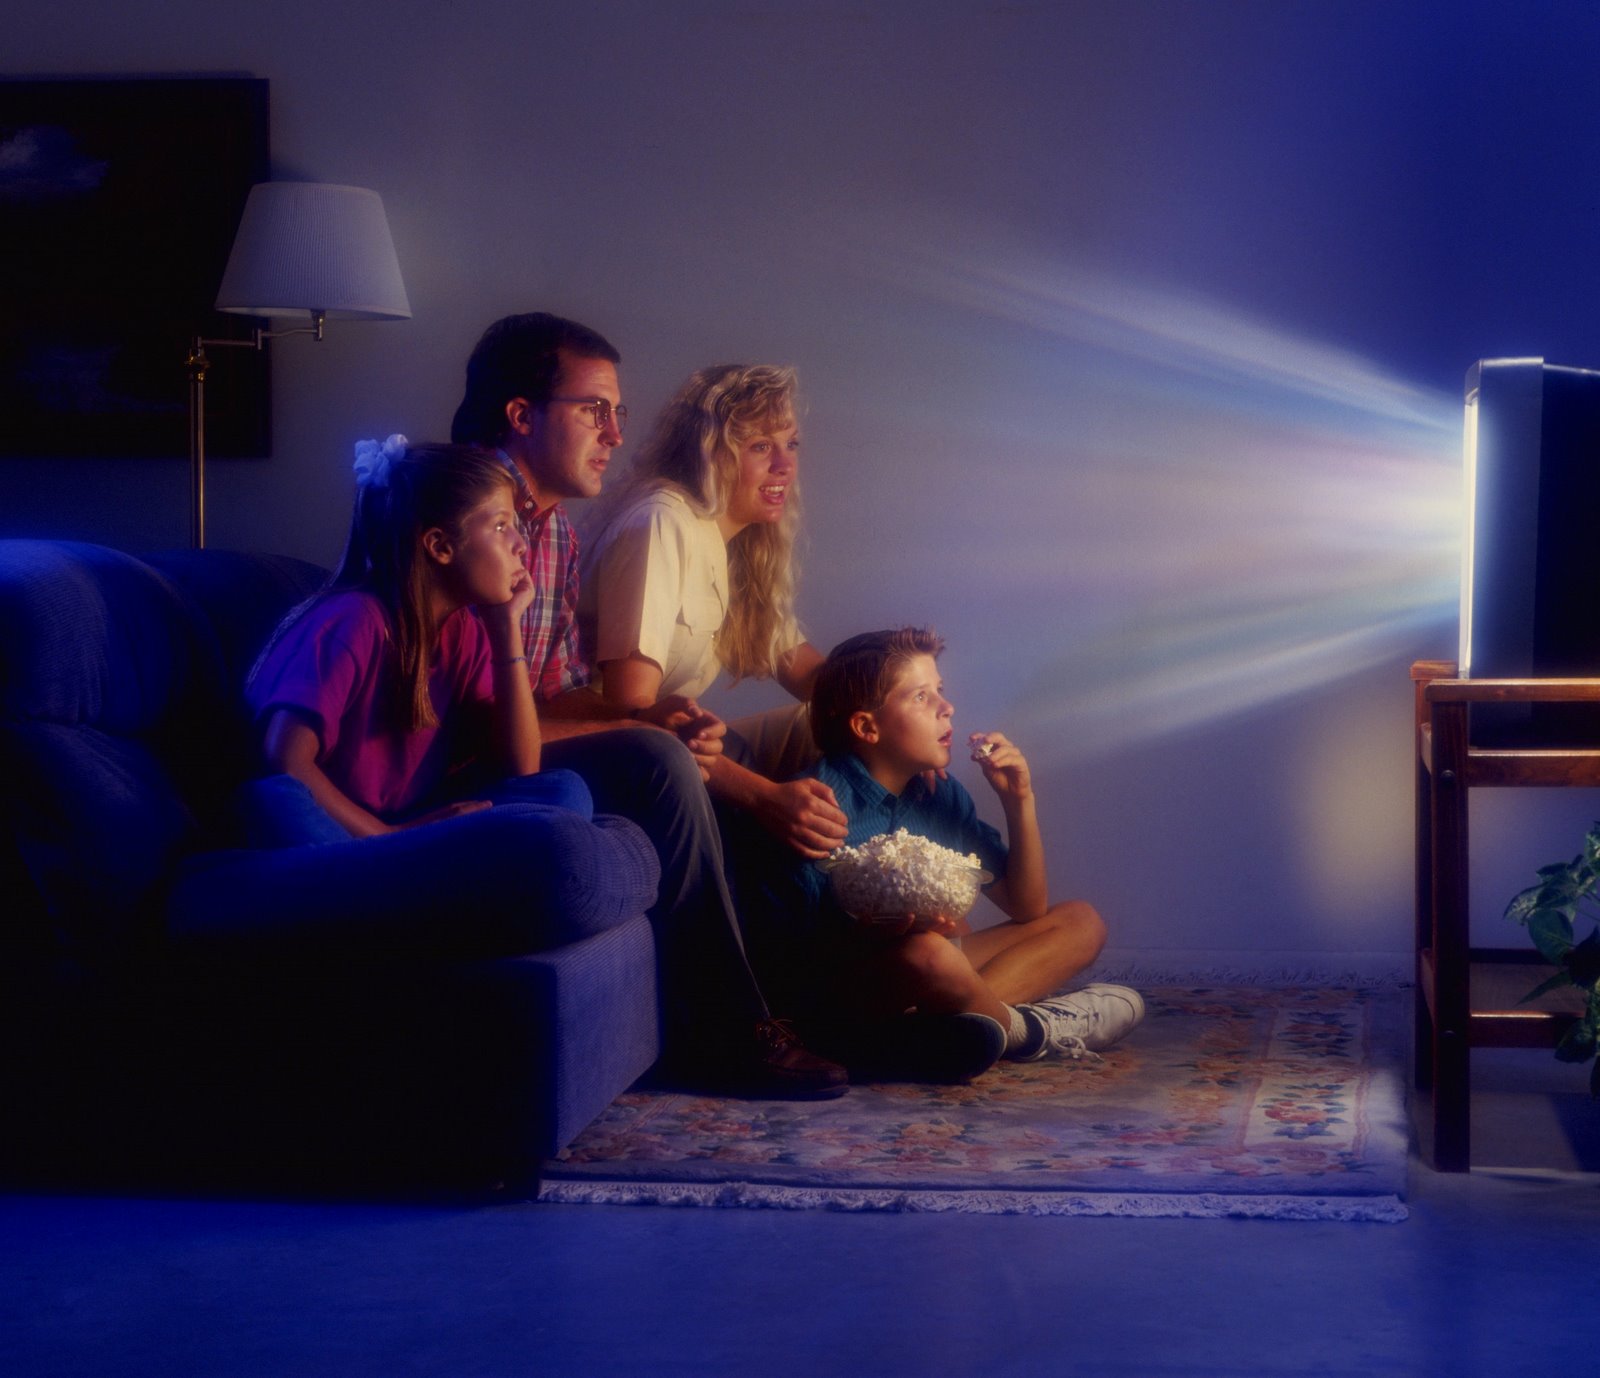 Как часто смотрят телевизор